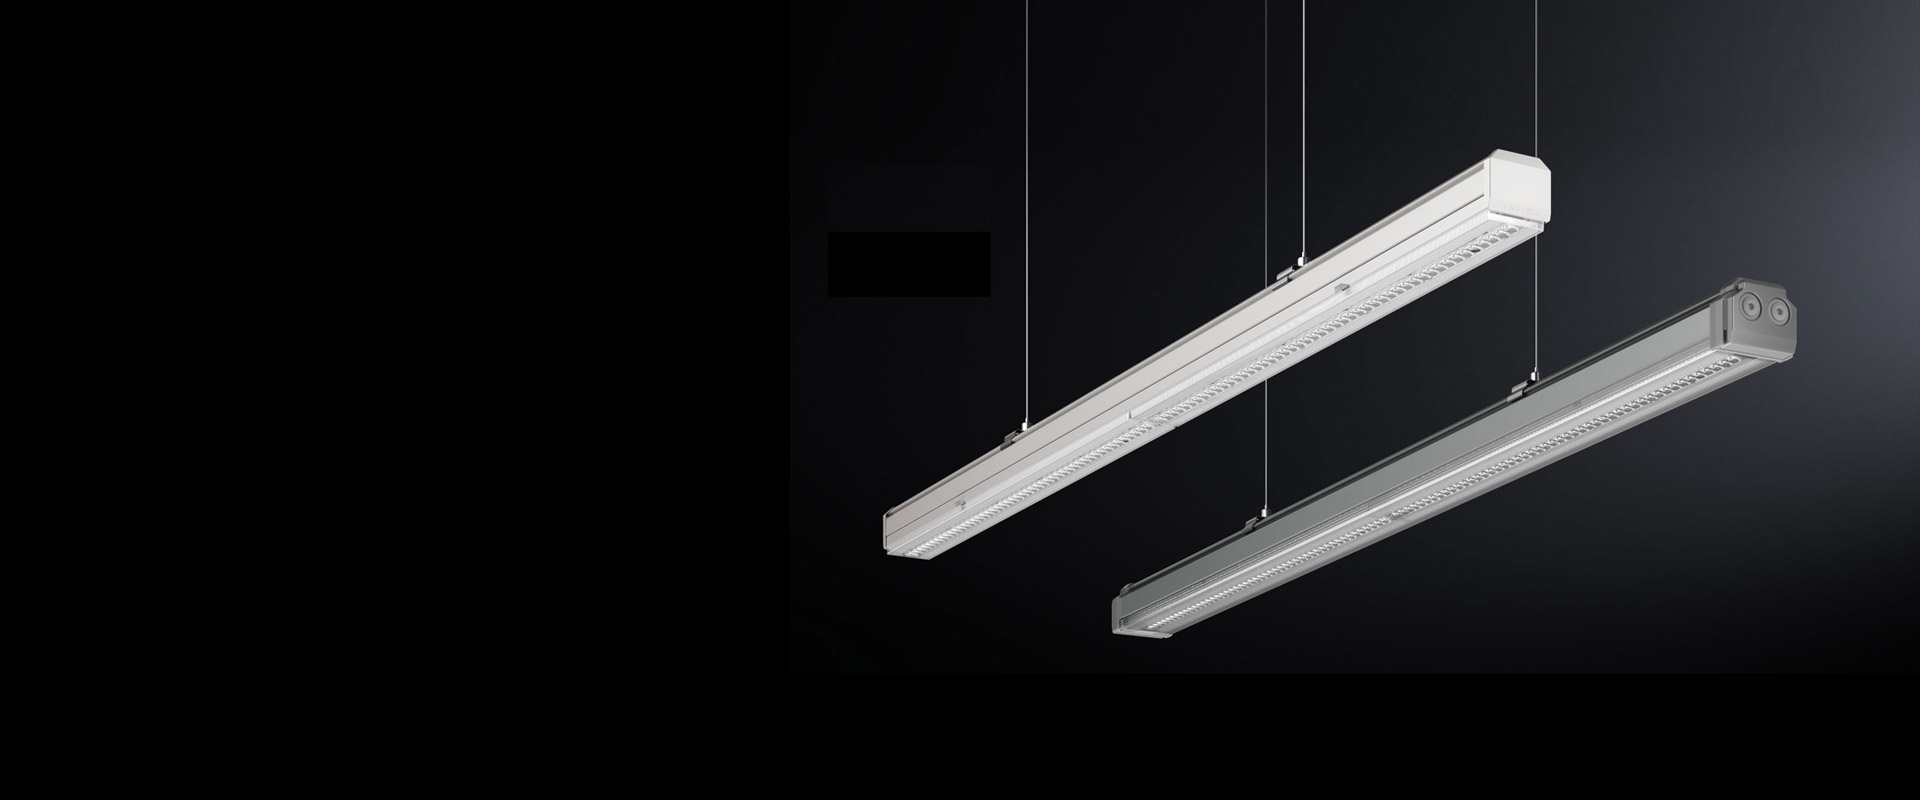 UNEX LIGHTING  Unex Leuchten, Profile, Treiber by ai-concept GmbH - Issuu